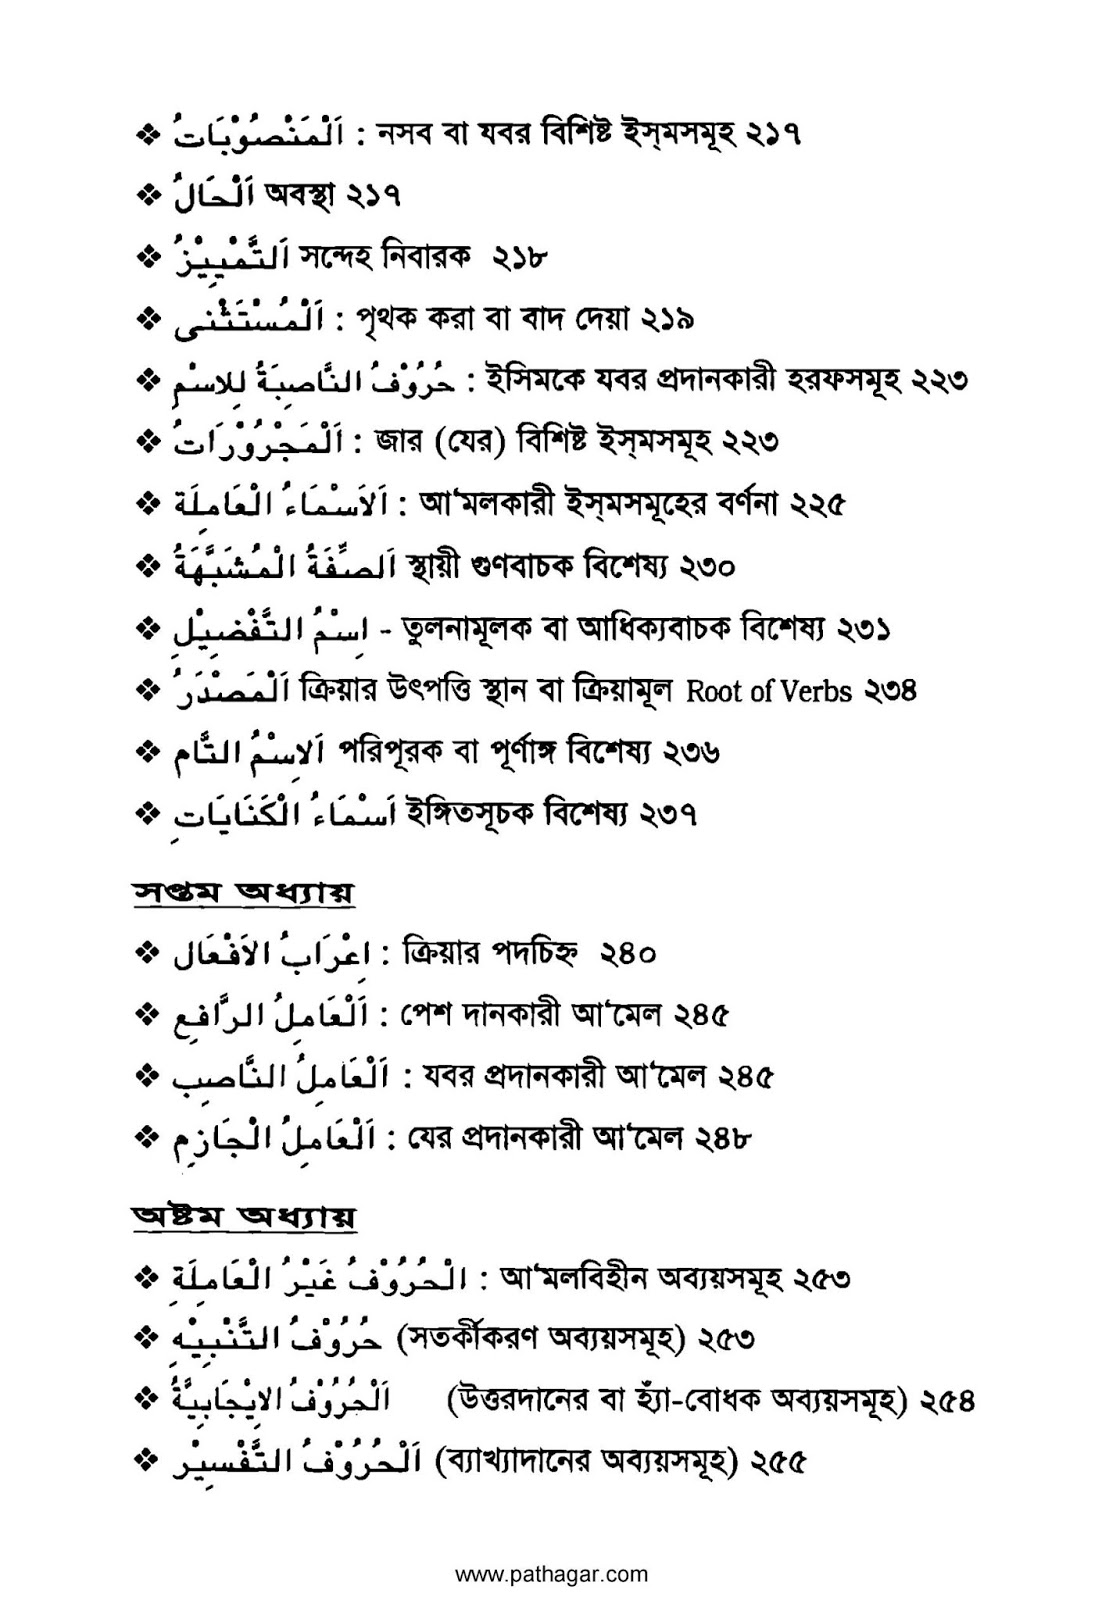 আরবি ব্যাকরণ pdf download- আরবি ব্যাকরণ বই